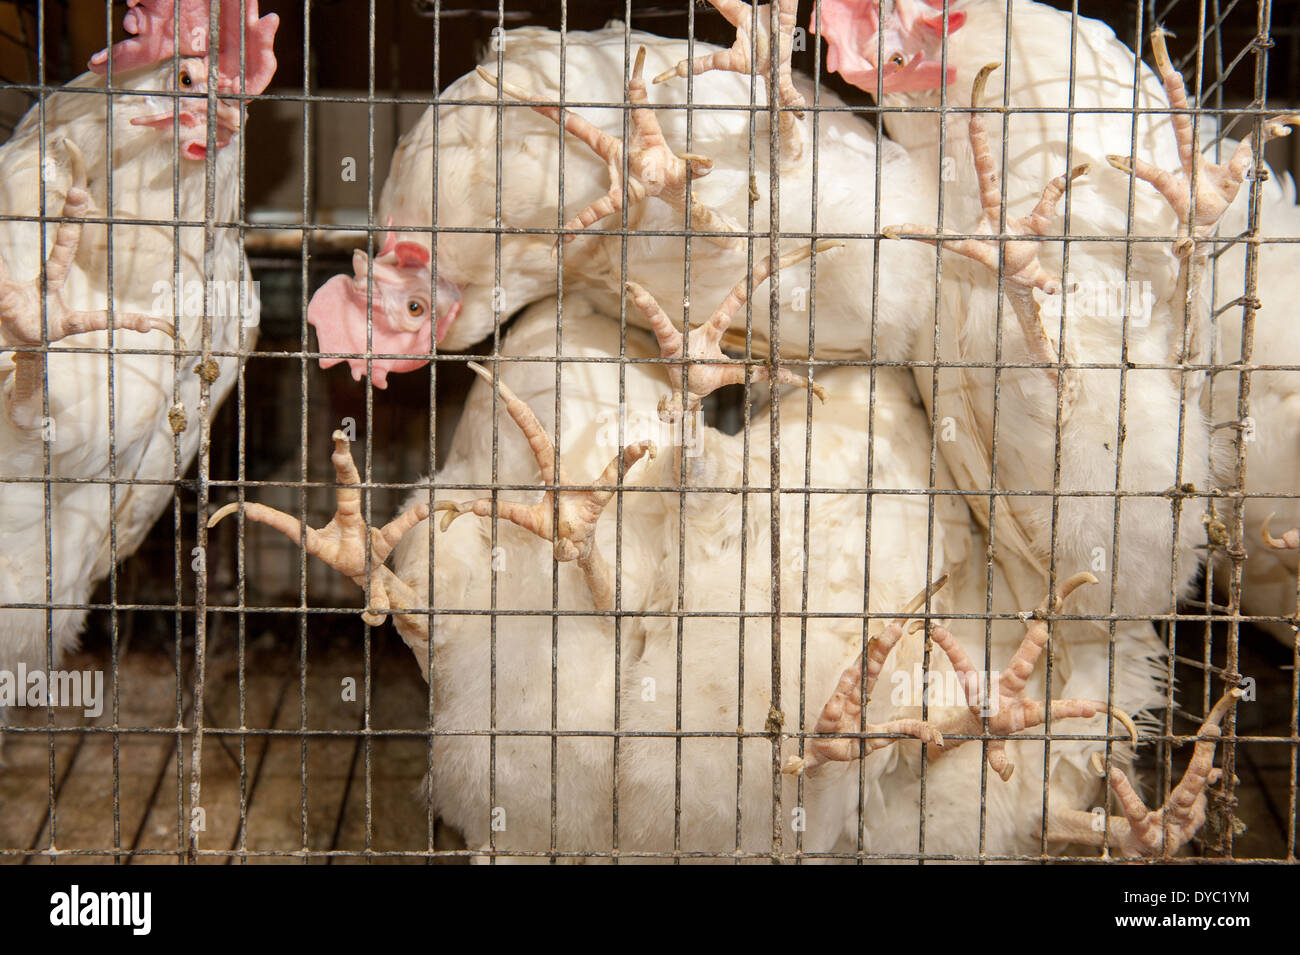 Pollos en jaulas fotografías e imágenes de alta resolución - Alamy